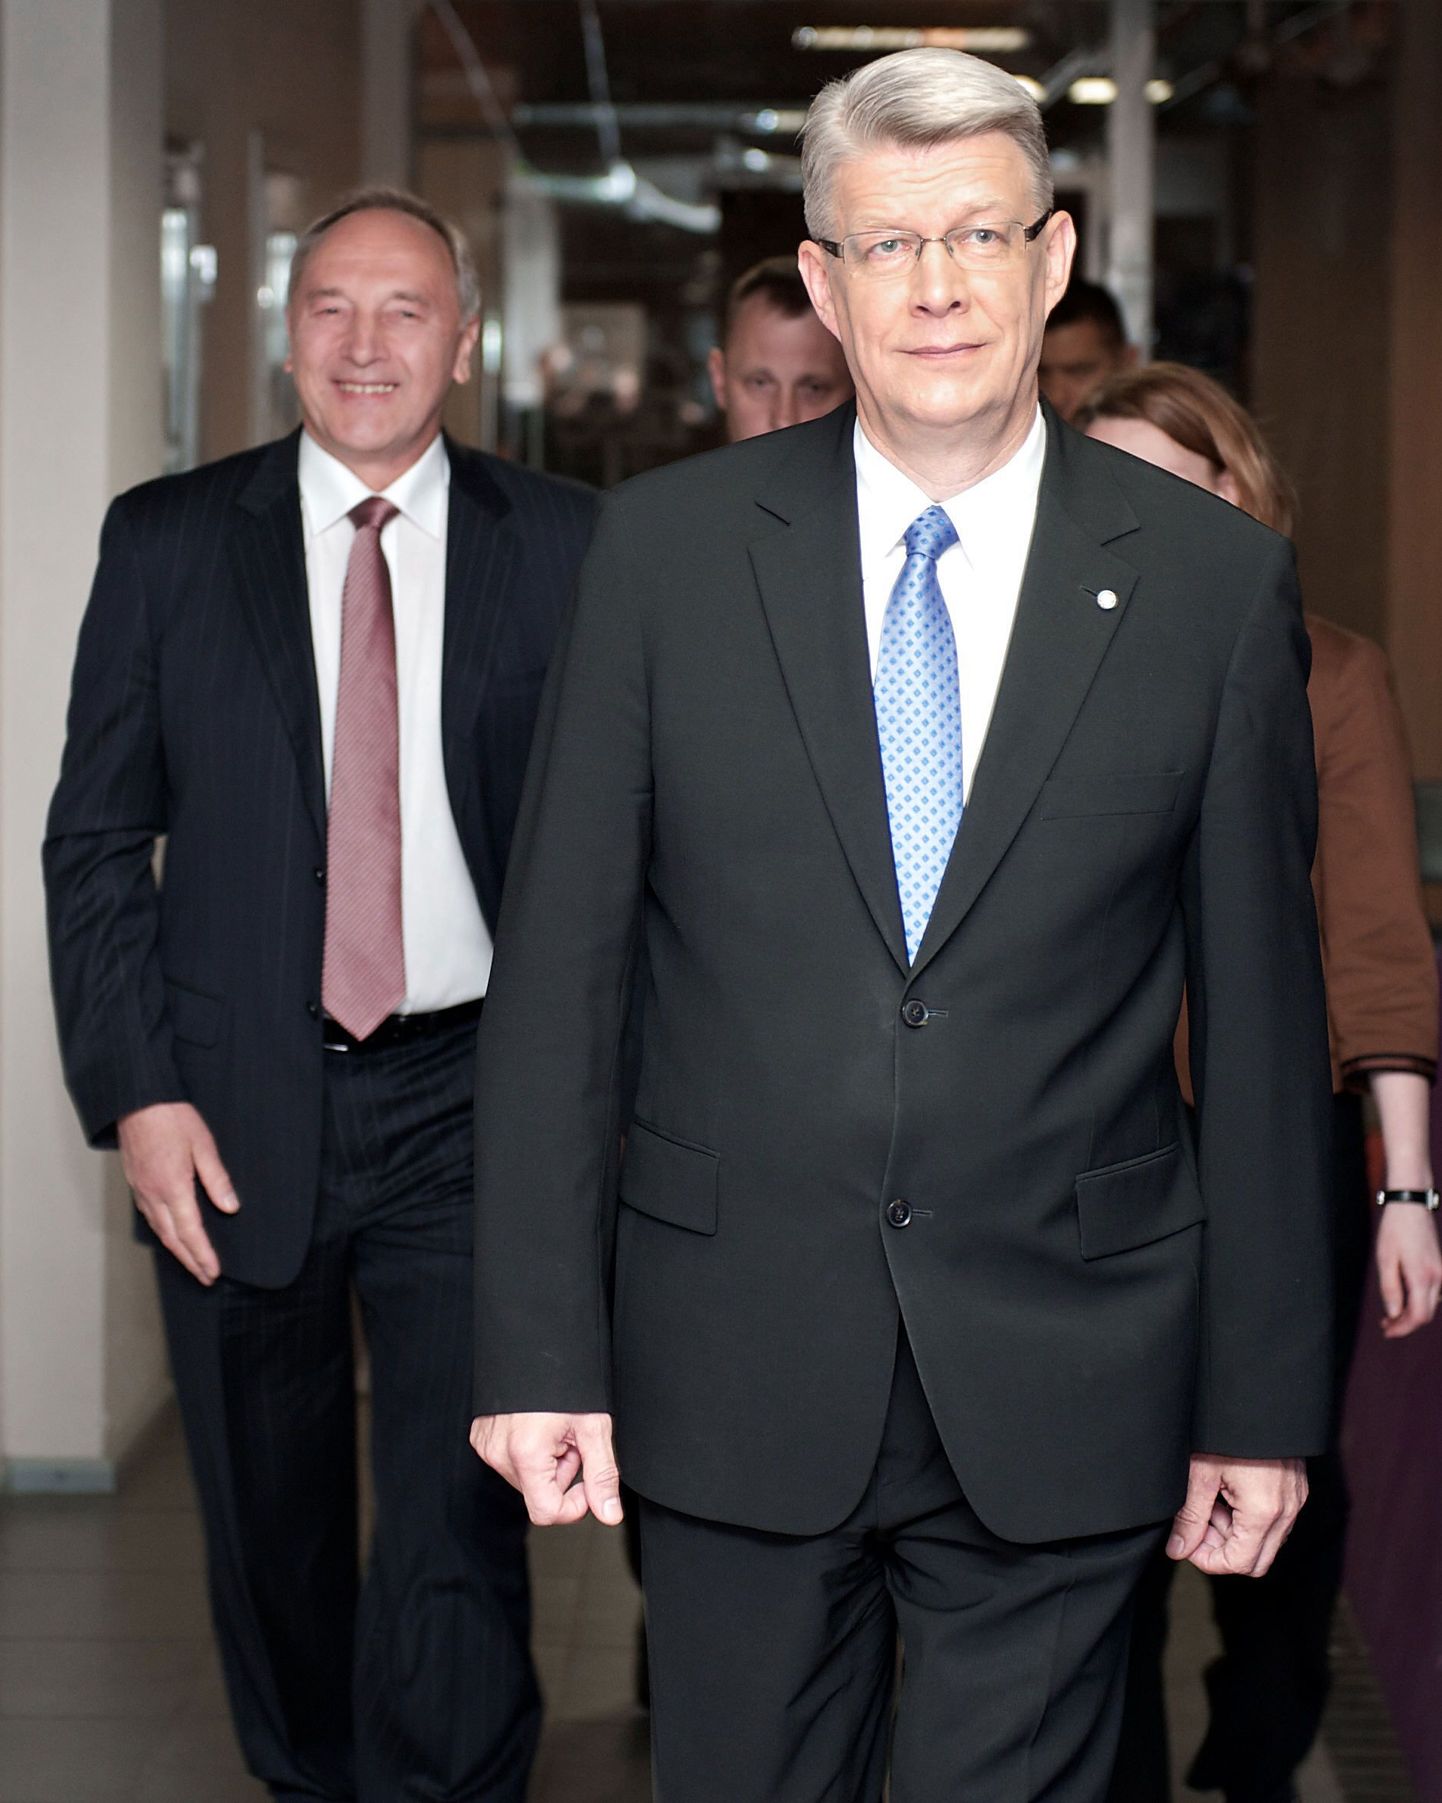 Läti presidendikandidaadid Valdis Zatlers (paremal) ja Andris Berzinš.